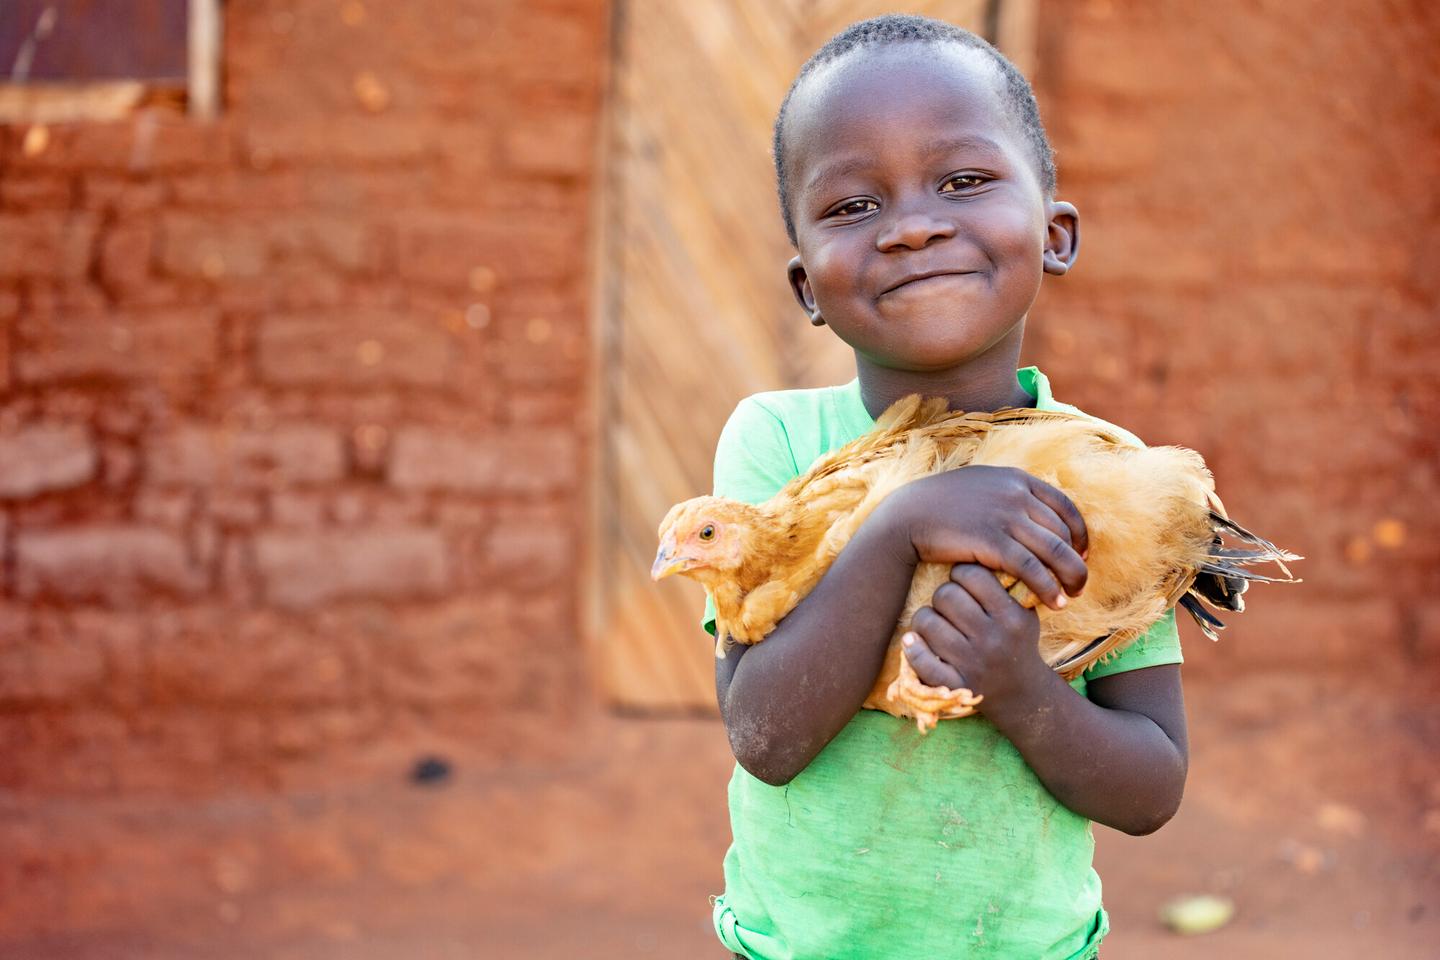 child holding chicken